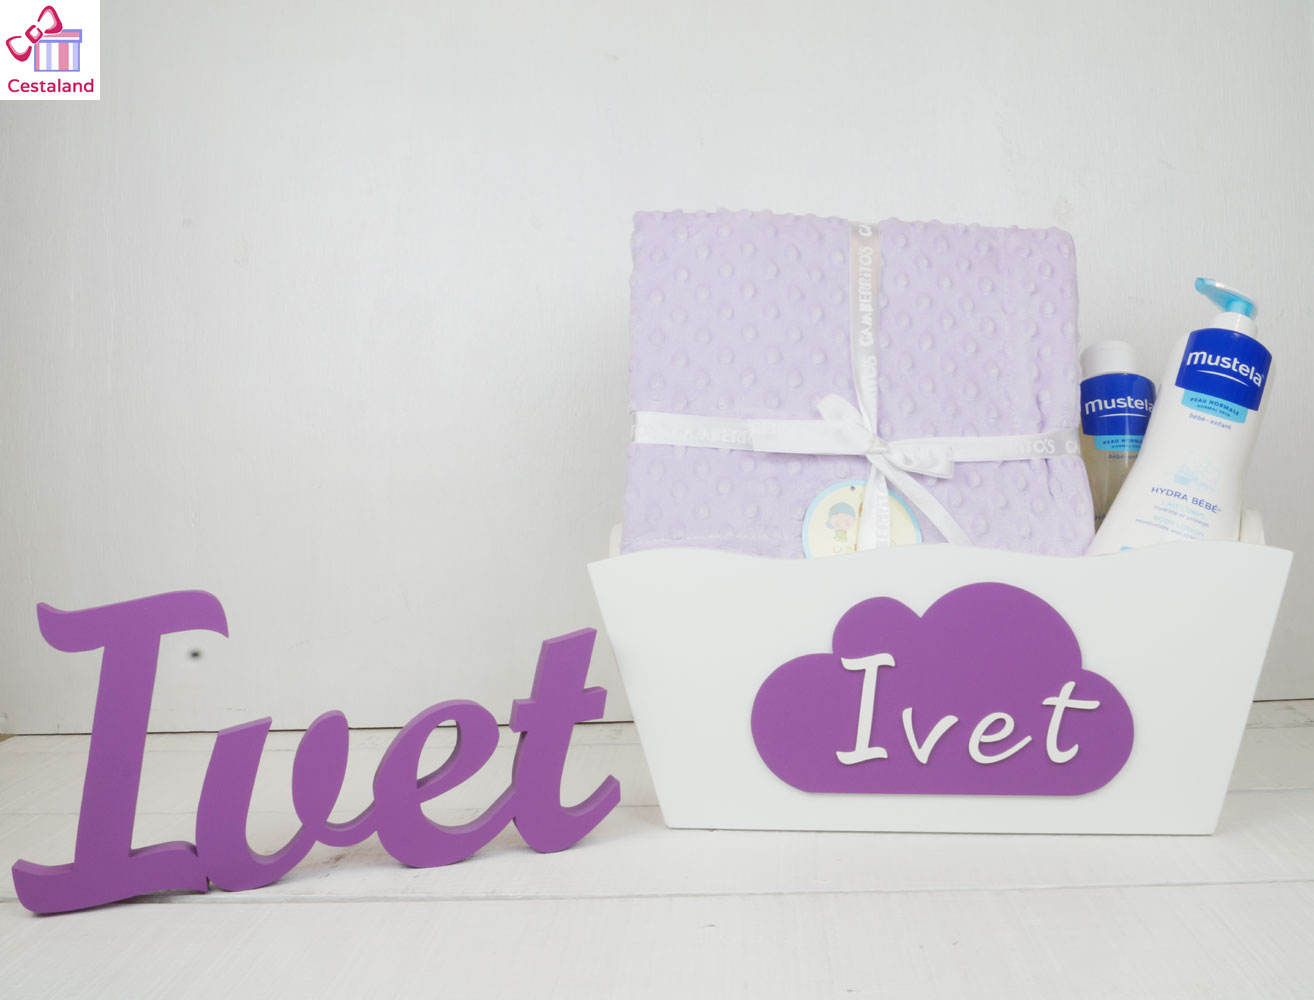 letras y caja personalizada ivet